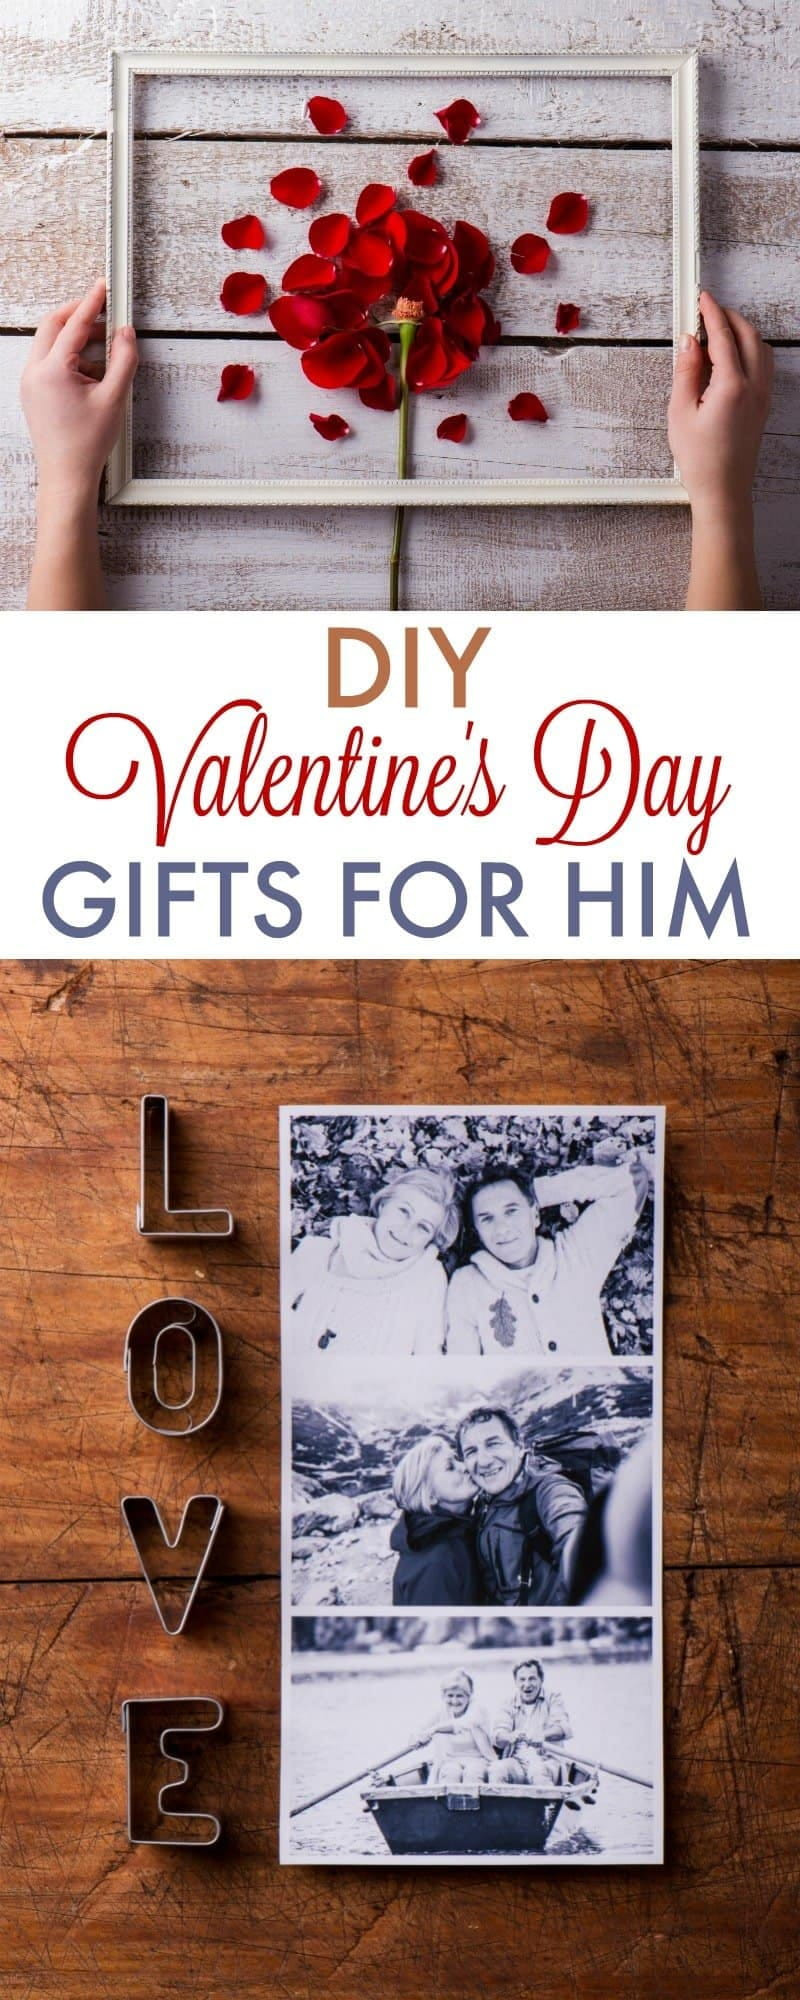 Ideas Gift For Boyfriend
 DIY Valentine s Day Gifts for Boyfriend 730 Sage Street